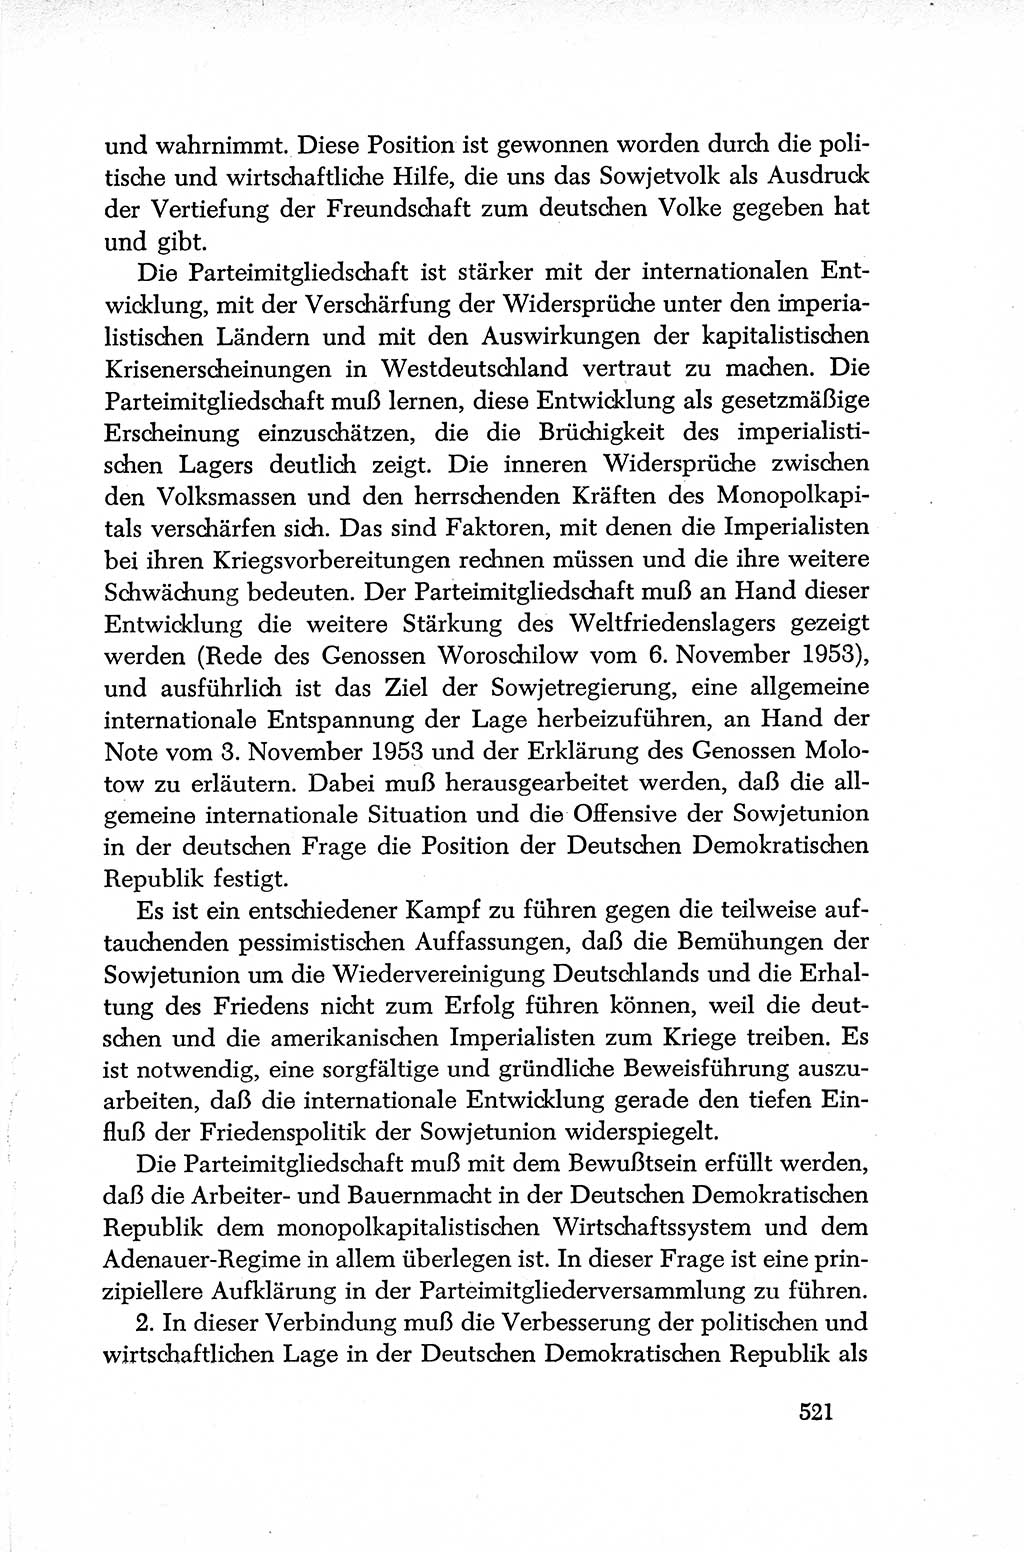 Dokumente der Sozialistischen Einheitspartei Deutschlands (SED) [Deutsche Demokratische Republik (DDR)] 1952-1953, Seite 521 (Dok. SED DDR 1952-1953, S. 521)